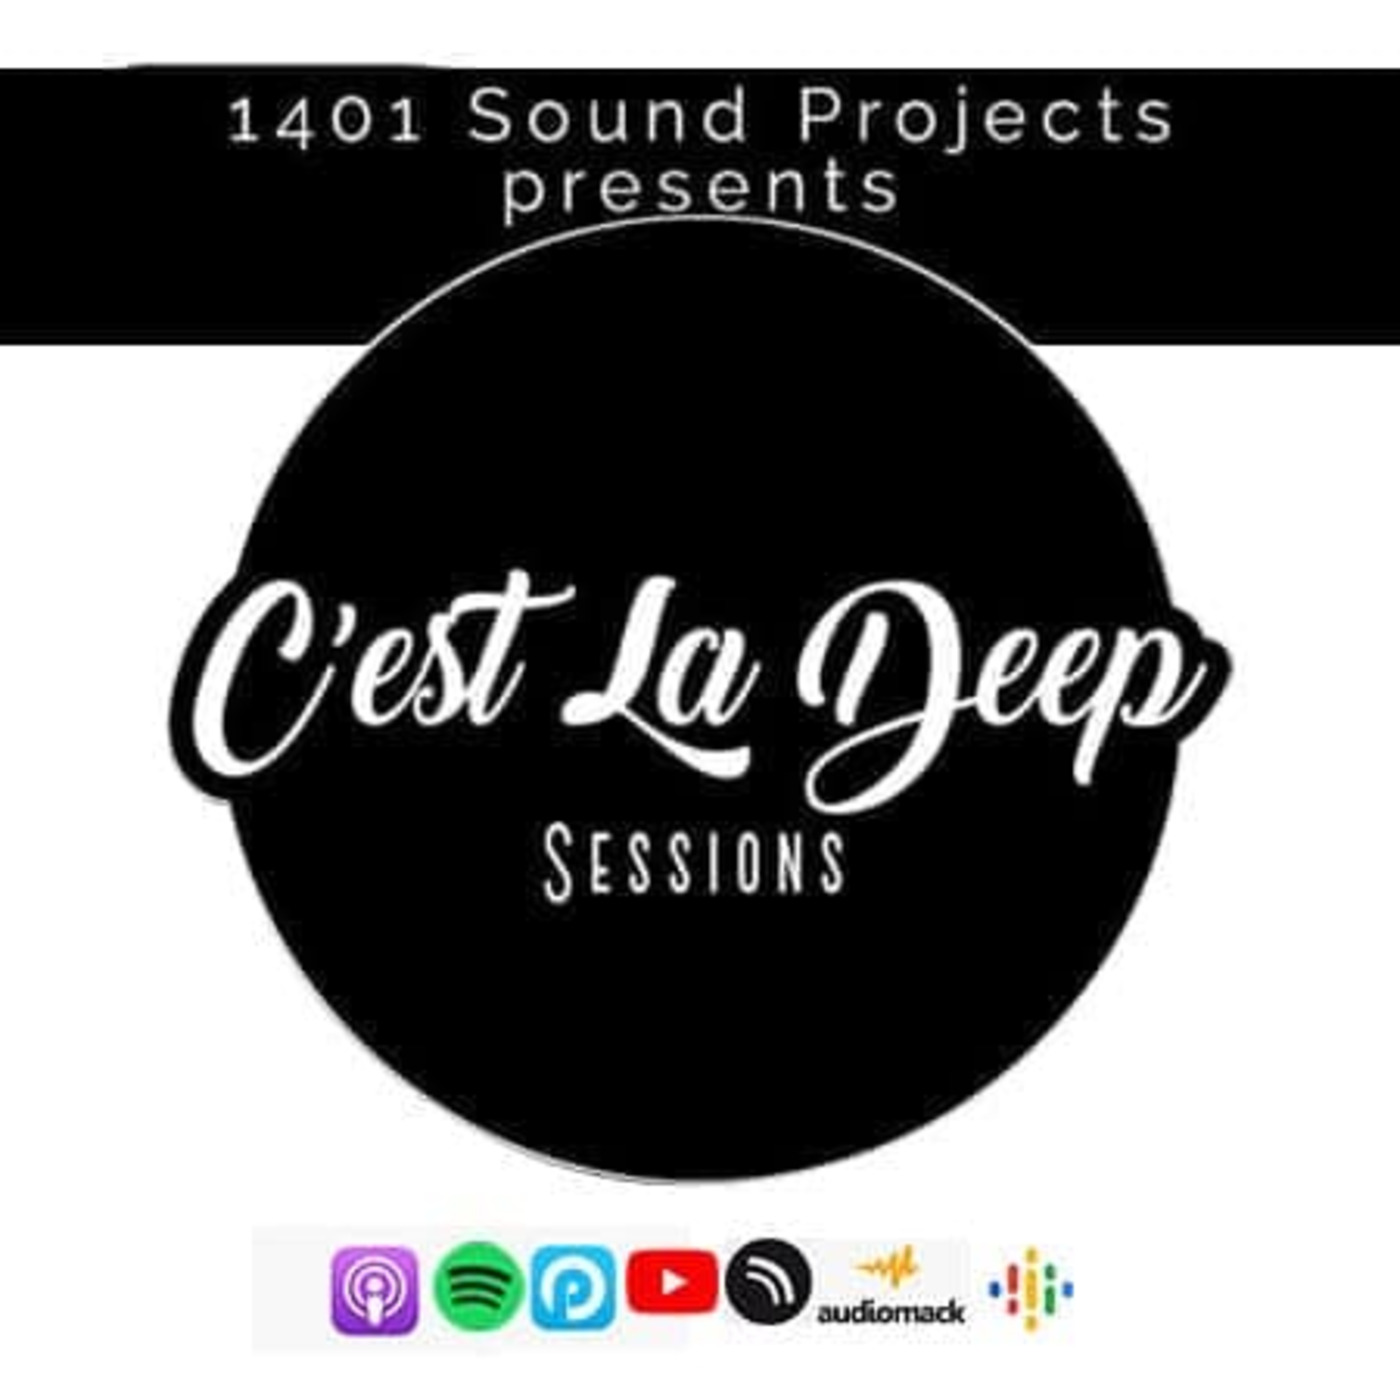 Episode 15: 1401 Sound Projects Presents C’est La Deep Sessions Vol.8 Mixed By Mphoza(Audio-J)